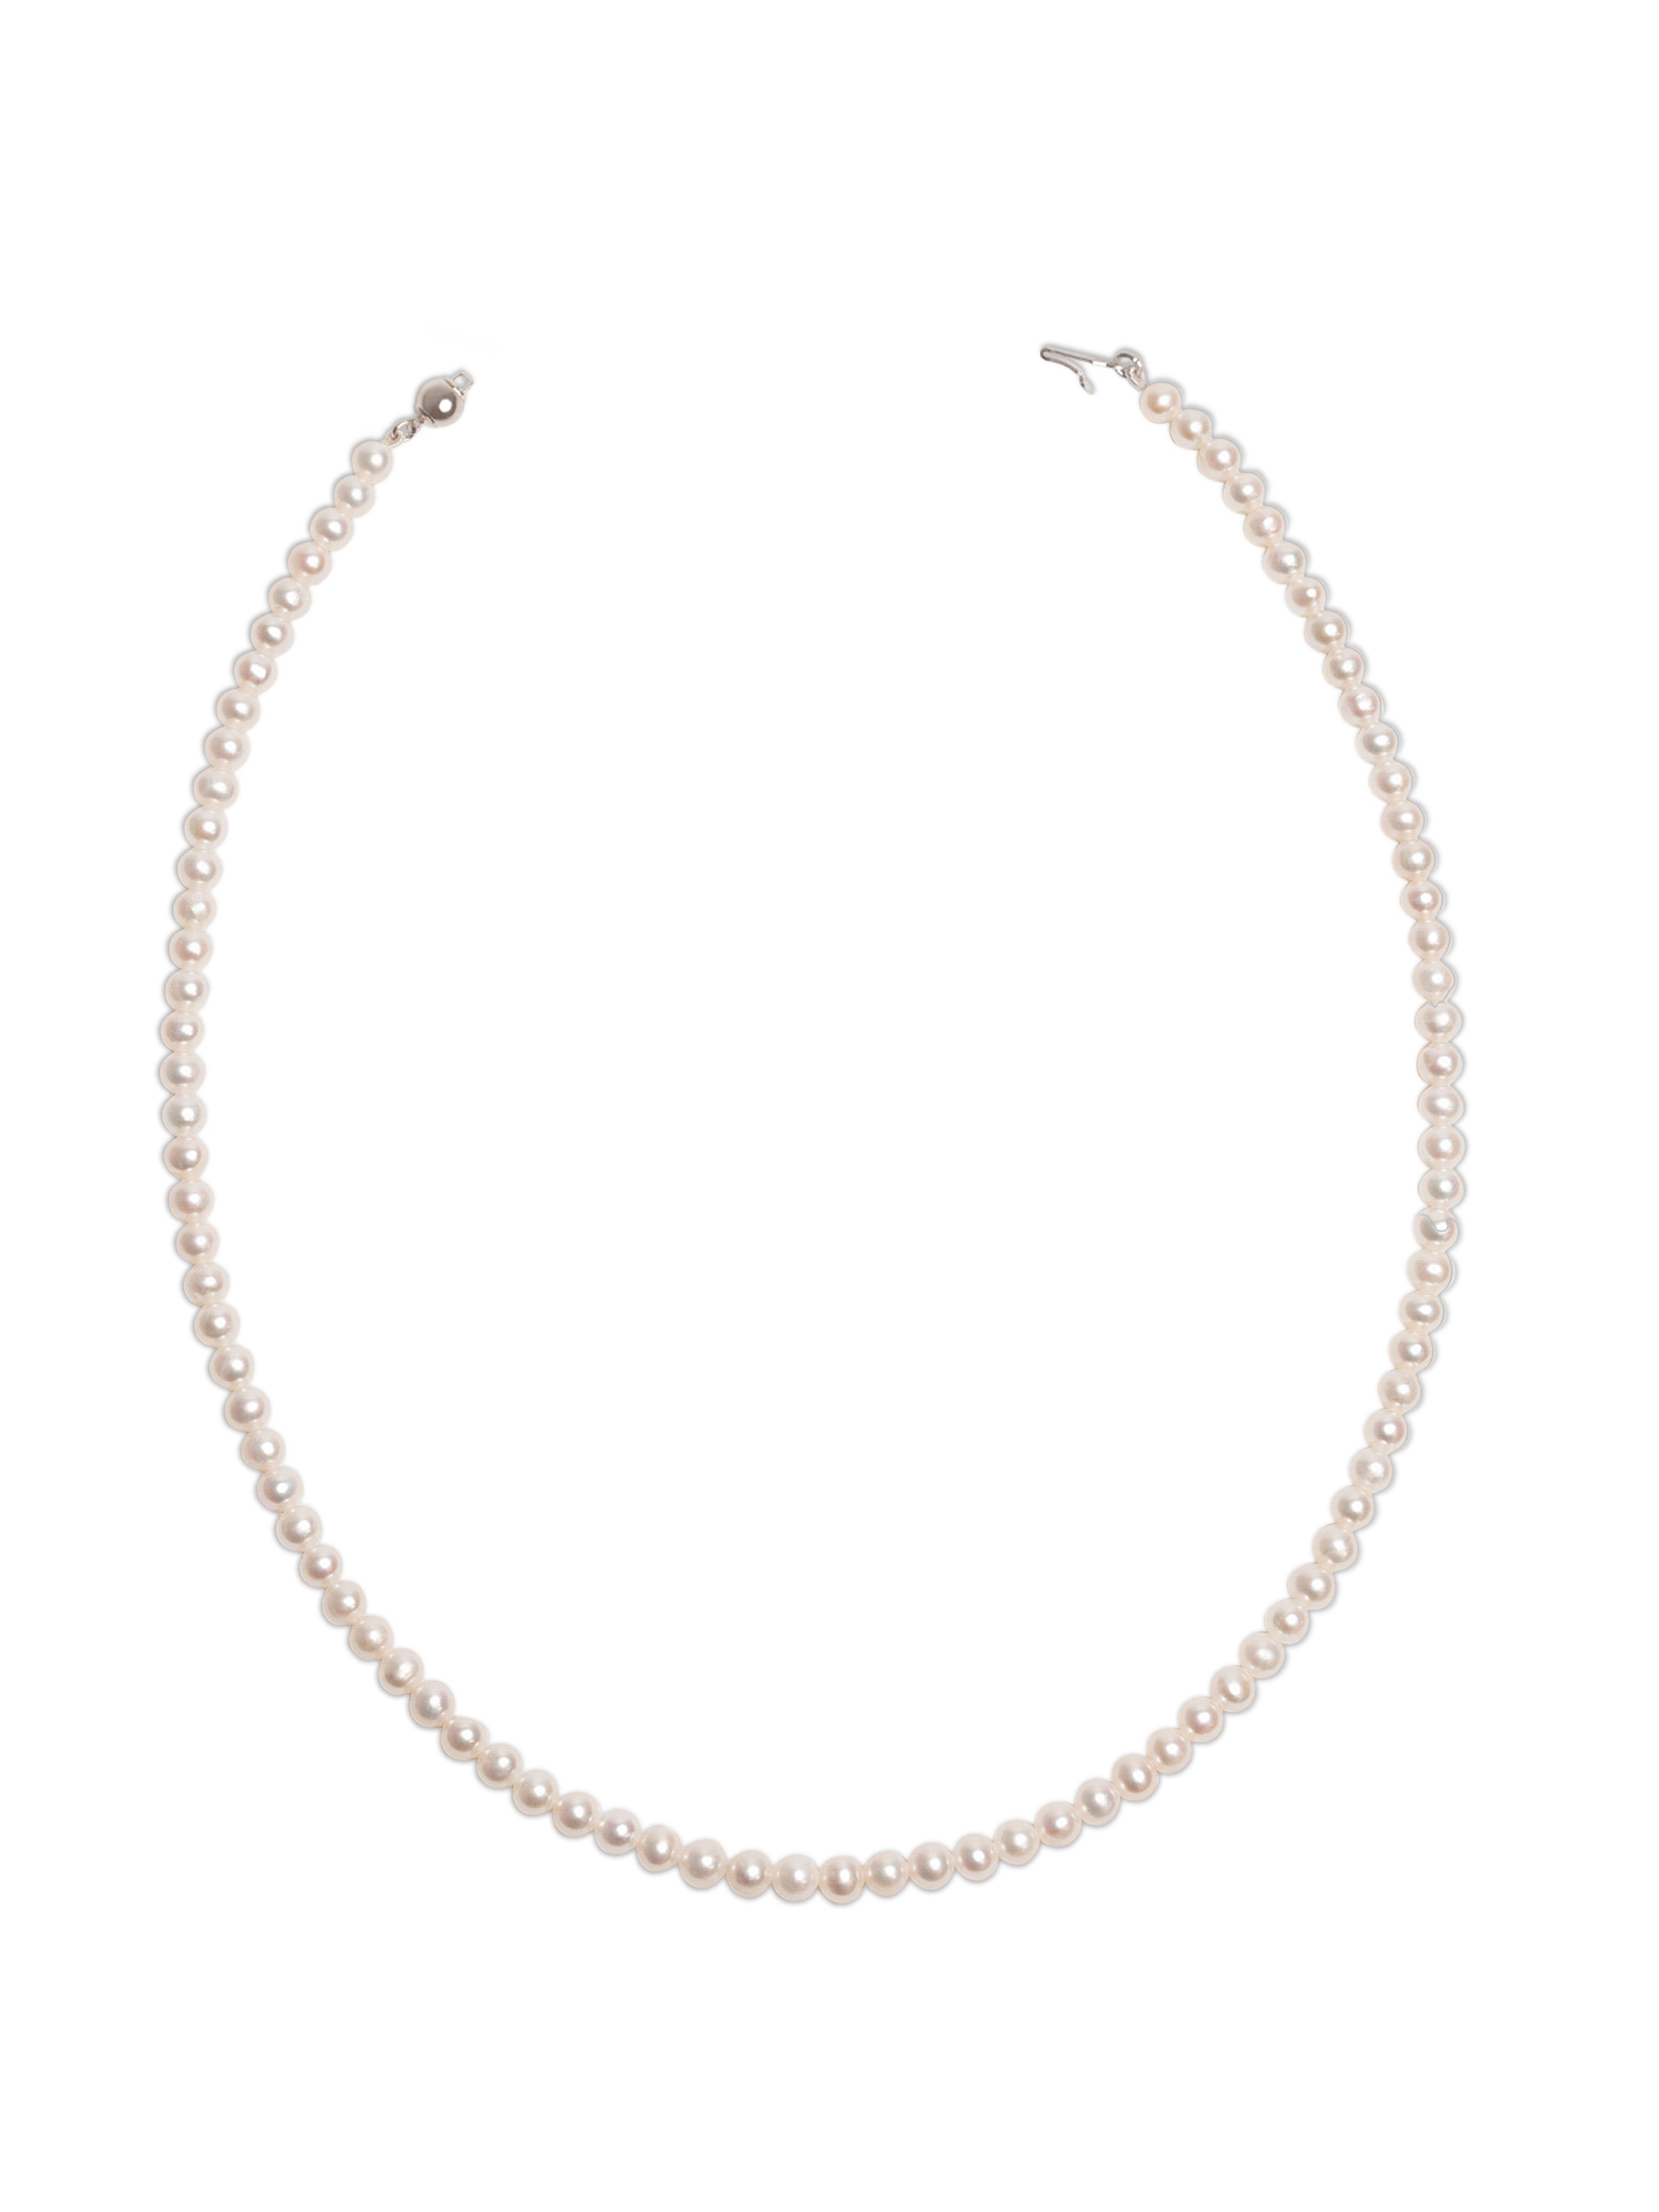 Collar de Perlas Cultivadas de Agua Dulce AA+ de 4,5-5,0 mm, 60 cm de largo | Oro 18K